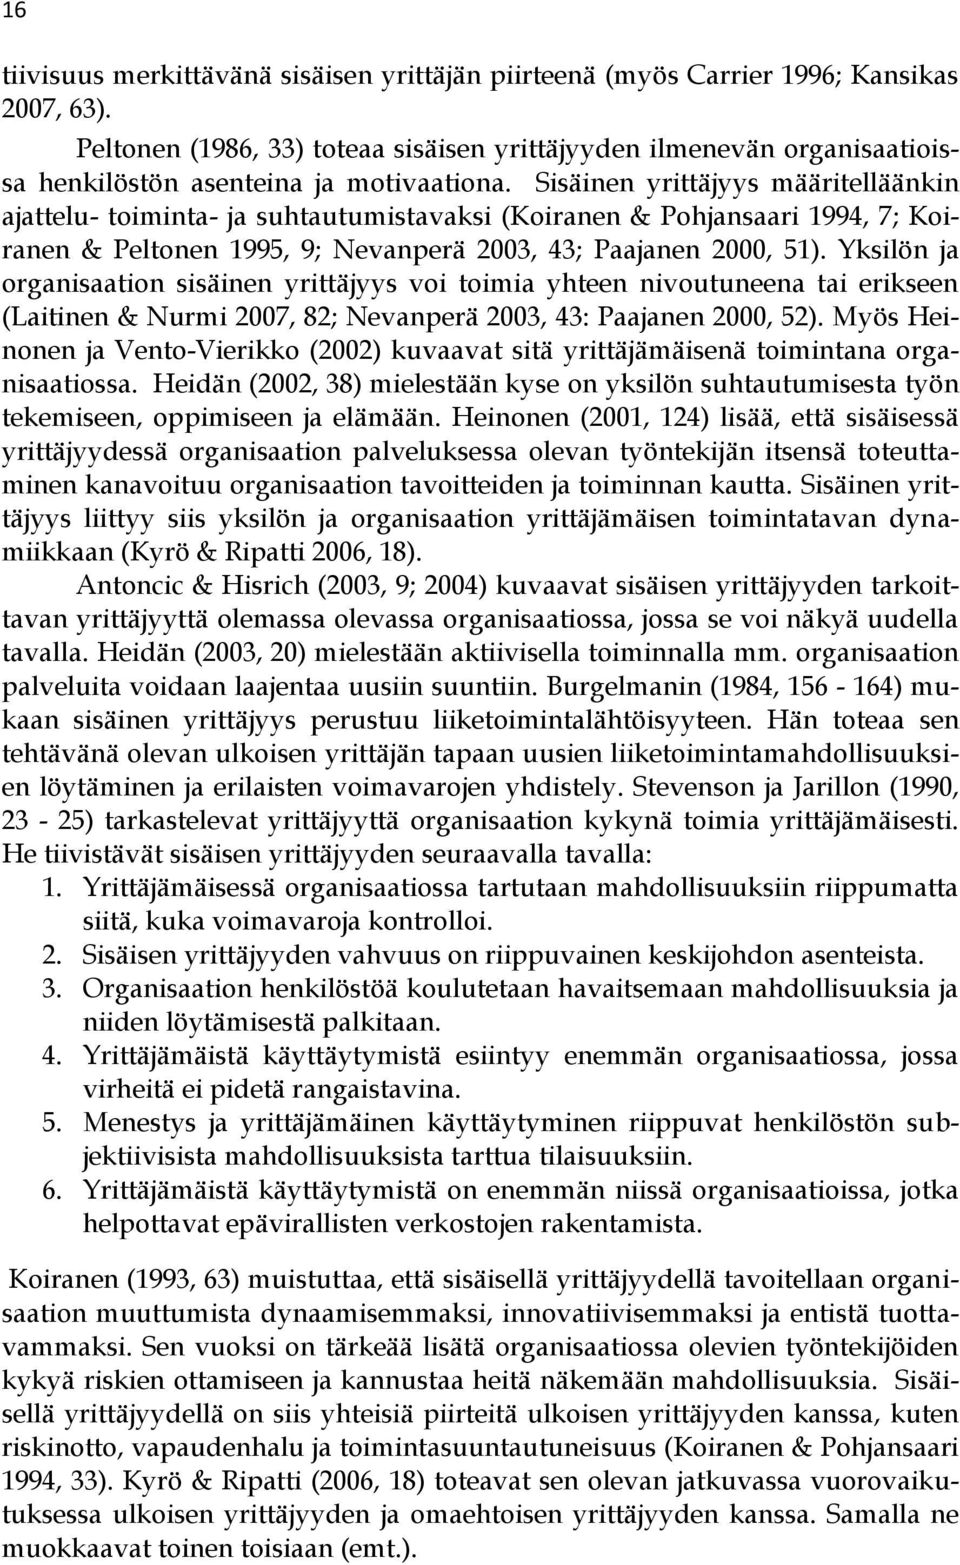 Sisäinen yrittäjyys määritelläänkin ajattelu- toiminta- ja suhtautumistavaksi (Koiranen & Pohjansaari 1994, 7; Koiranen & Peltonen 1995, 9; Nevanperä 2003, 43; Paajanen 2000, 51).